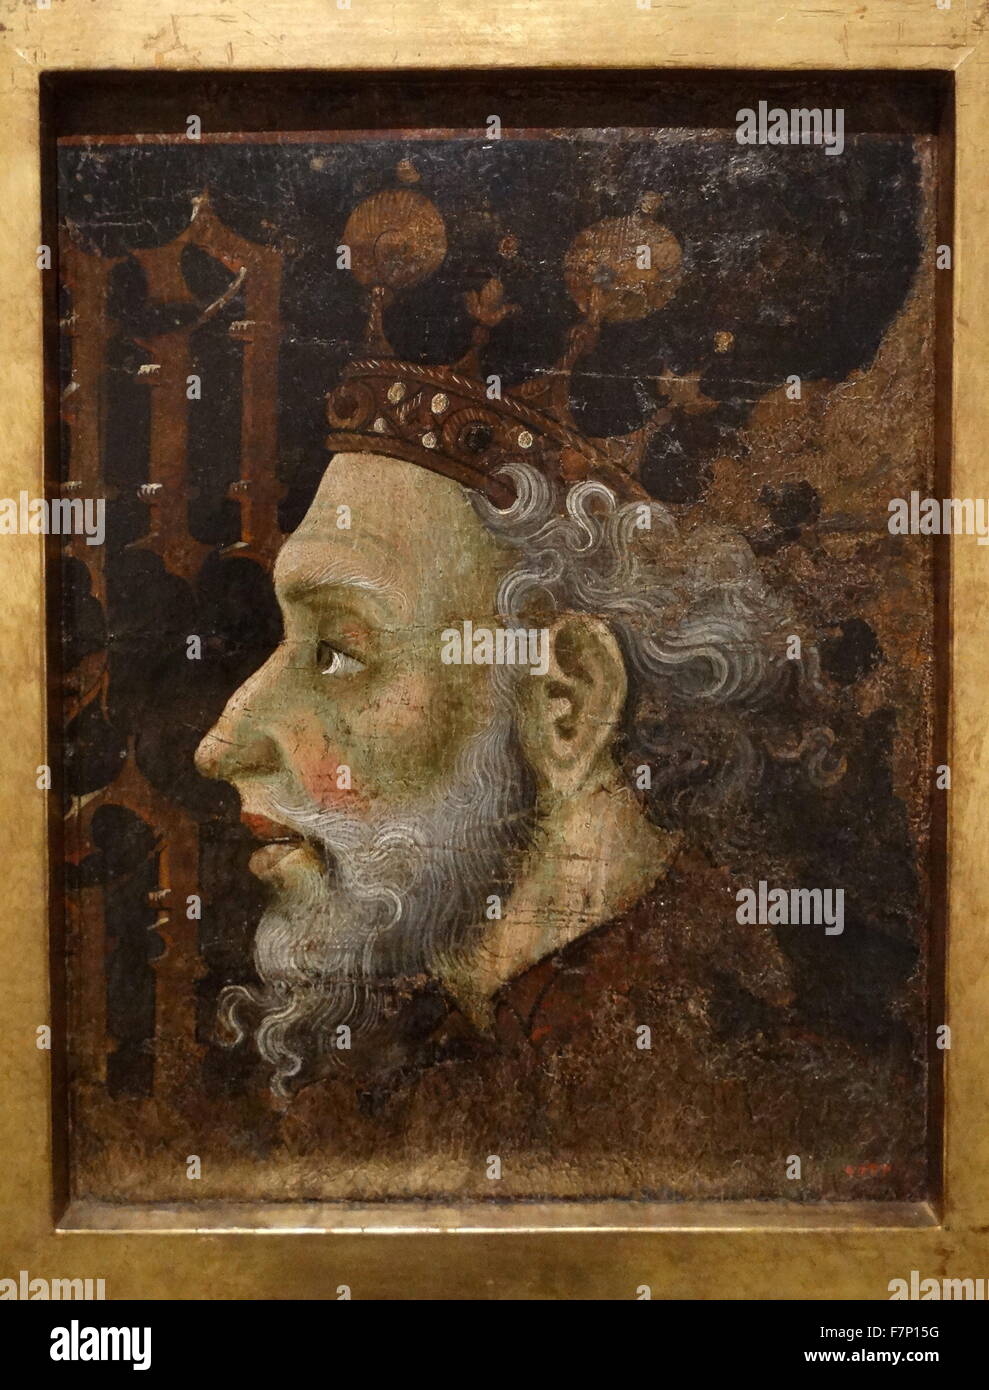 Porträt von Alfonso II Liberal, König von Aragon. Gonzalo Pérez und Jaume Mateu, katalanische Künstler des 15. Jahrhunderts Stockfoto